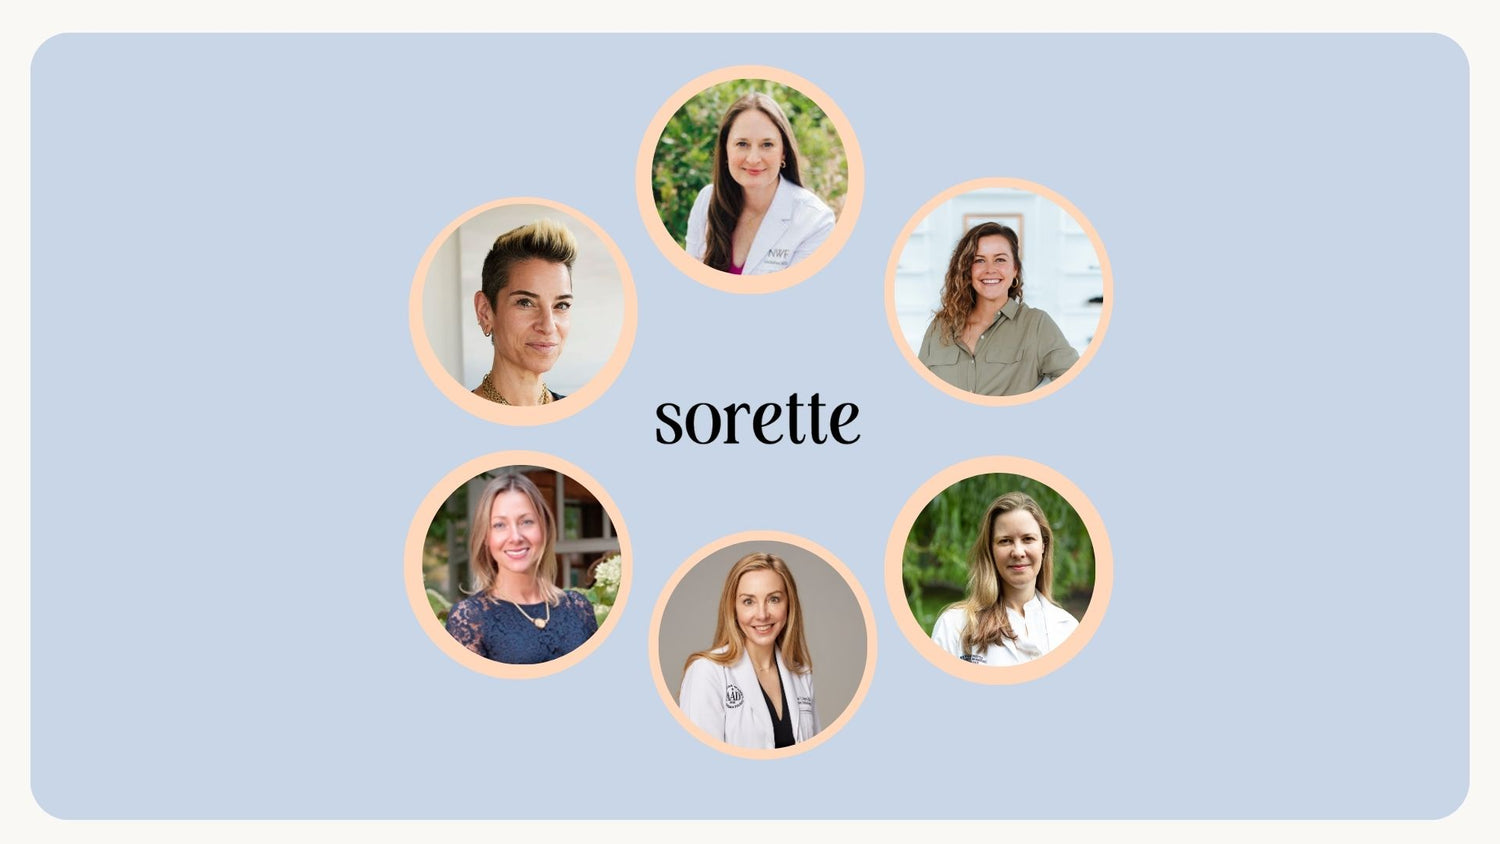 Meet Sorette’s Scientific Advisory Board